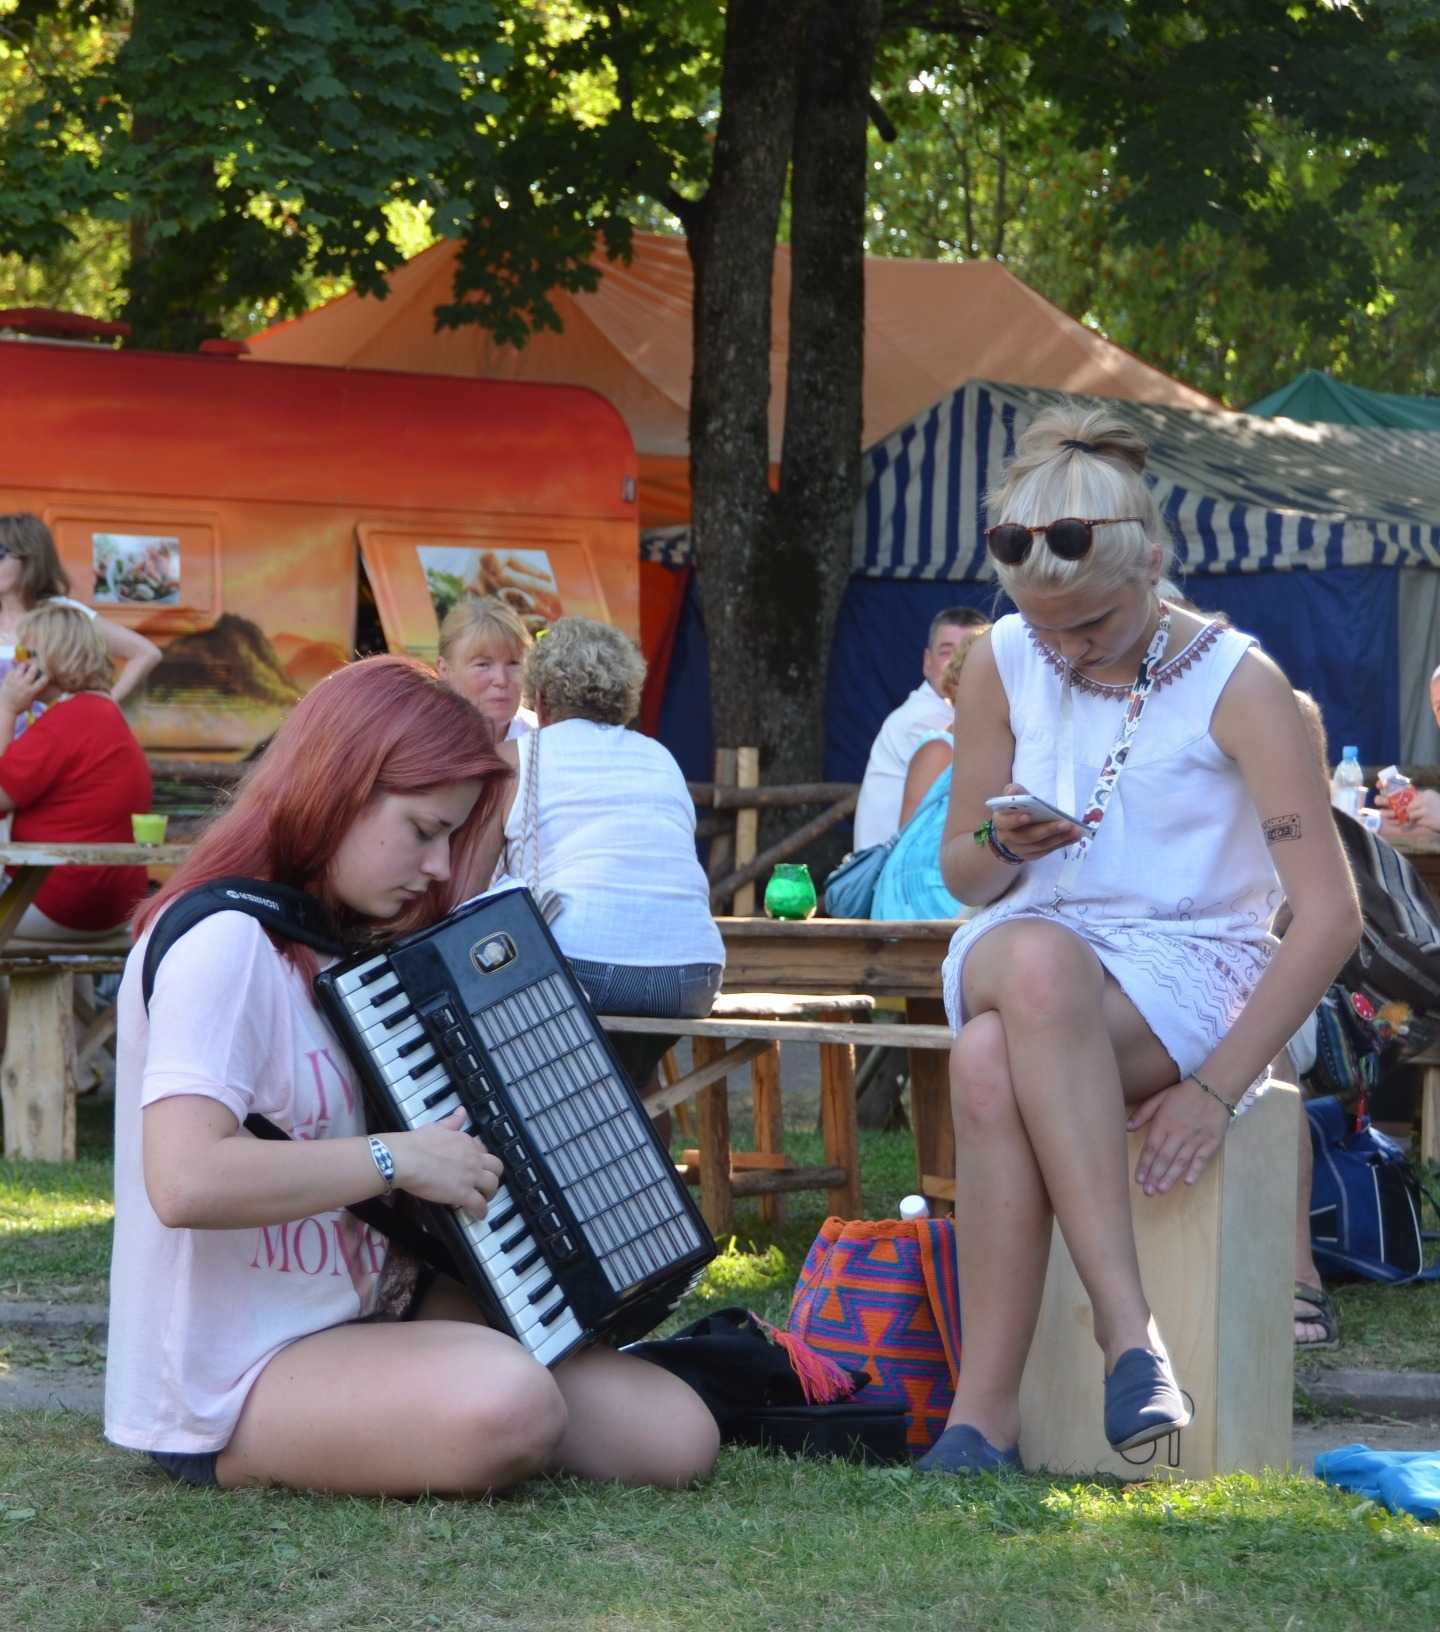 Viljandi Folk Müzik Festivalinden kareler… 